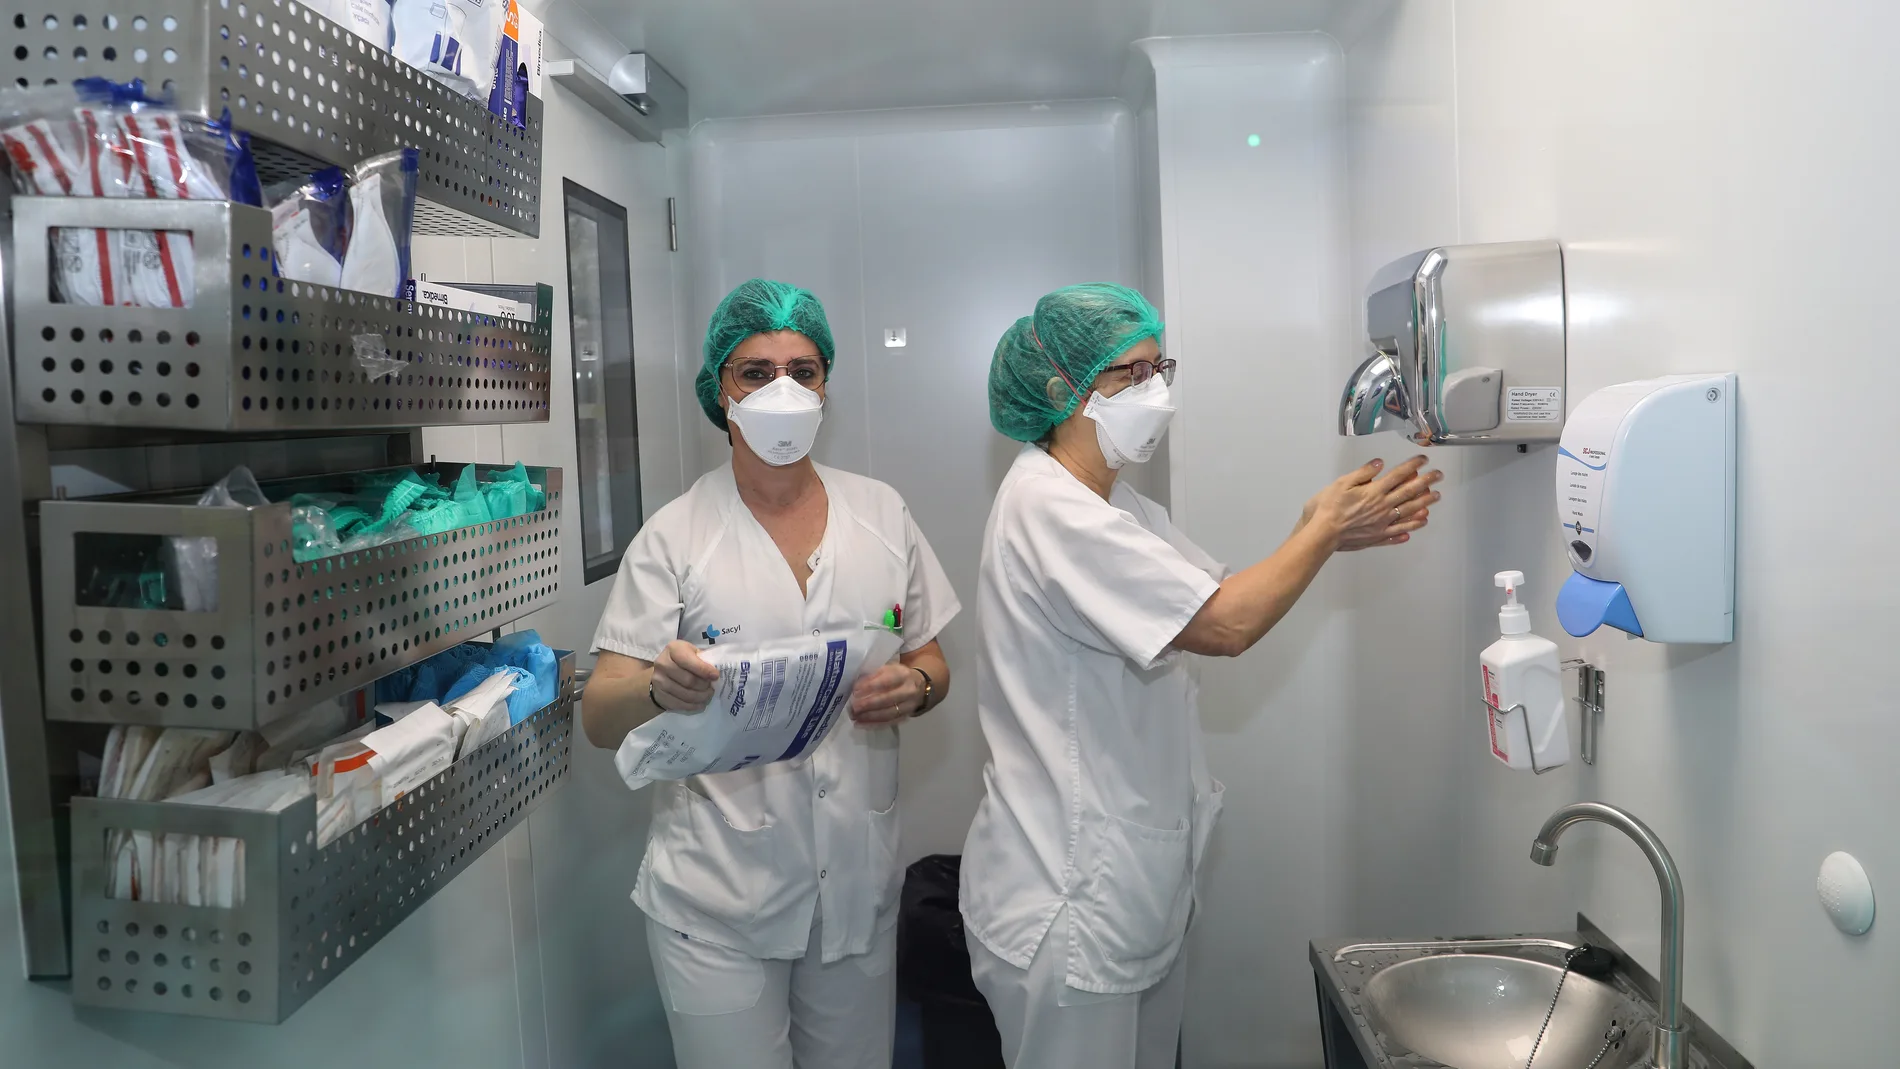 El complejo asistencial inaugura una Sala Blanca completamente aislada y esterilizada para poder preparar de forma segura los medicamentos, especialmente los oncológicos